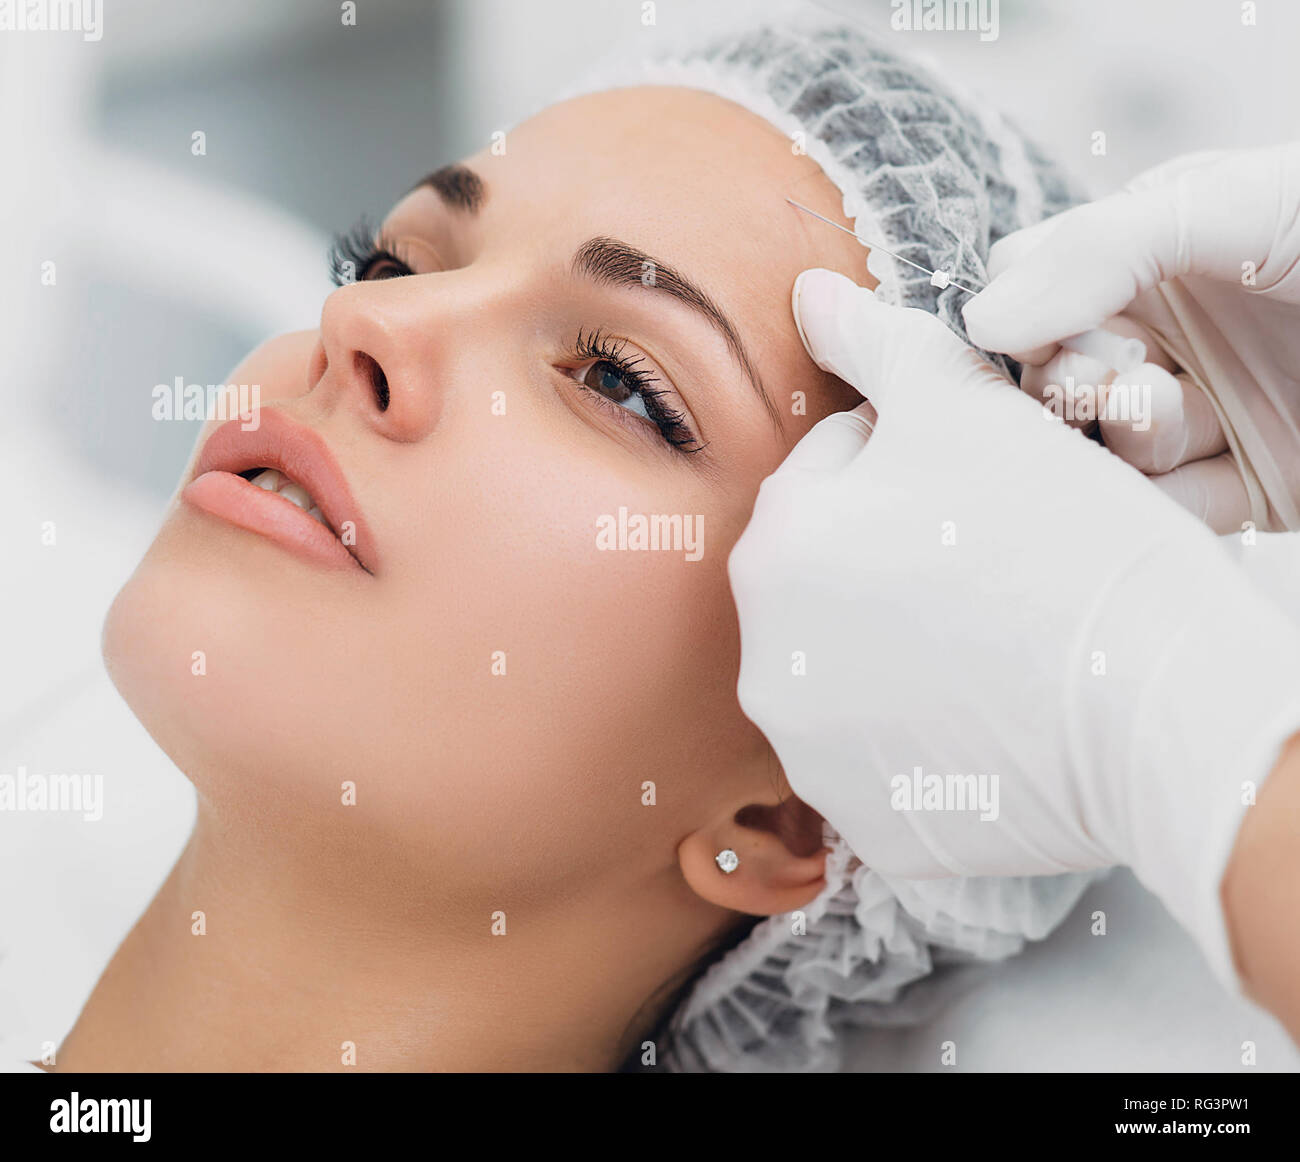 Kosmetikerin installiert Die mesothreads in das Gesicht der Frau. Anti-aging kosmetische Verfahren Stockfoto